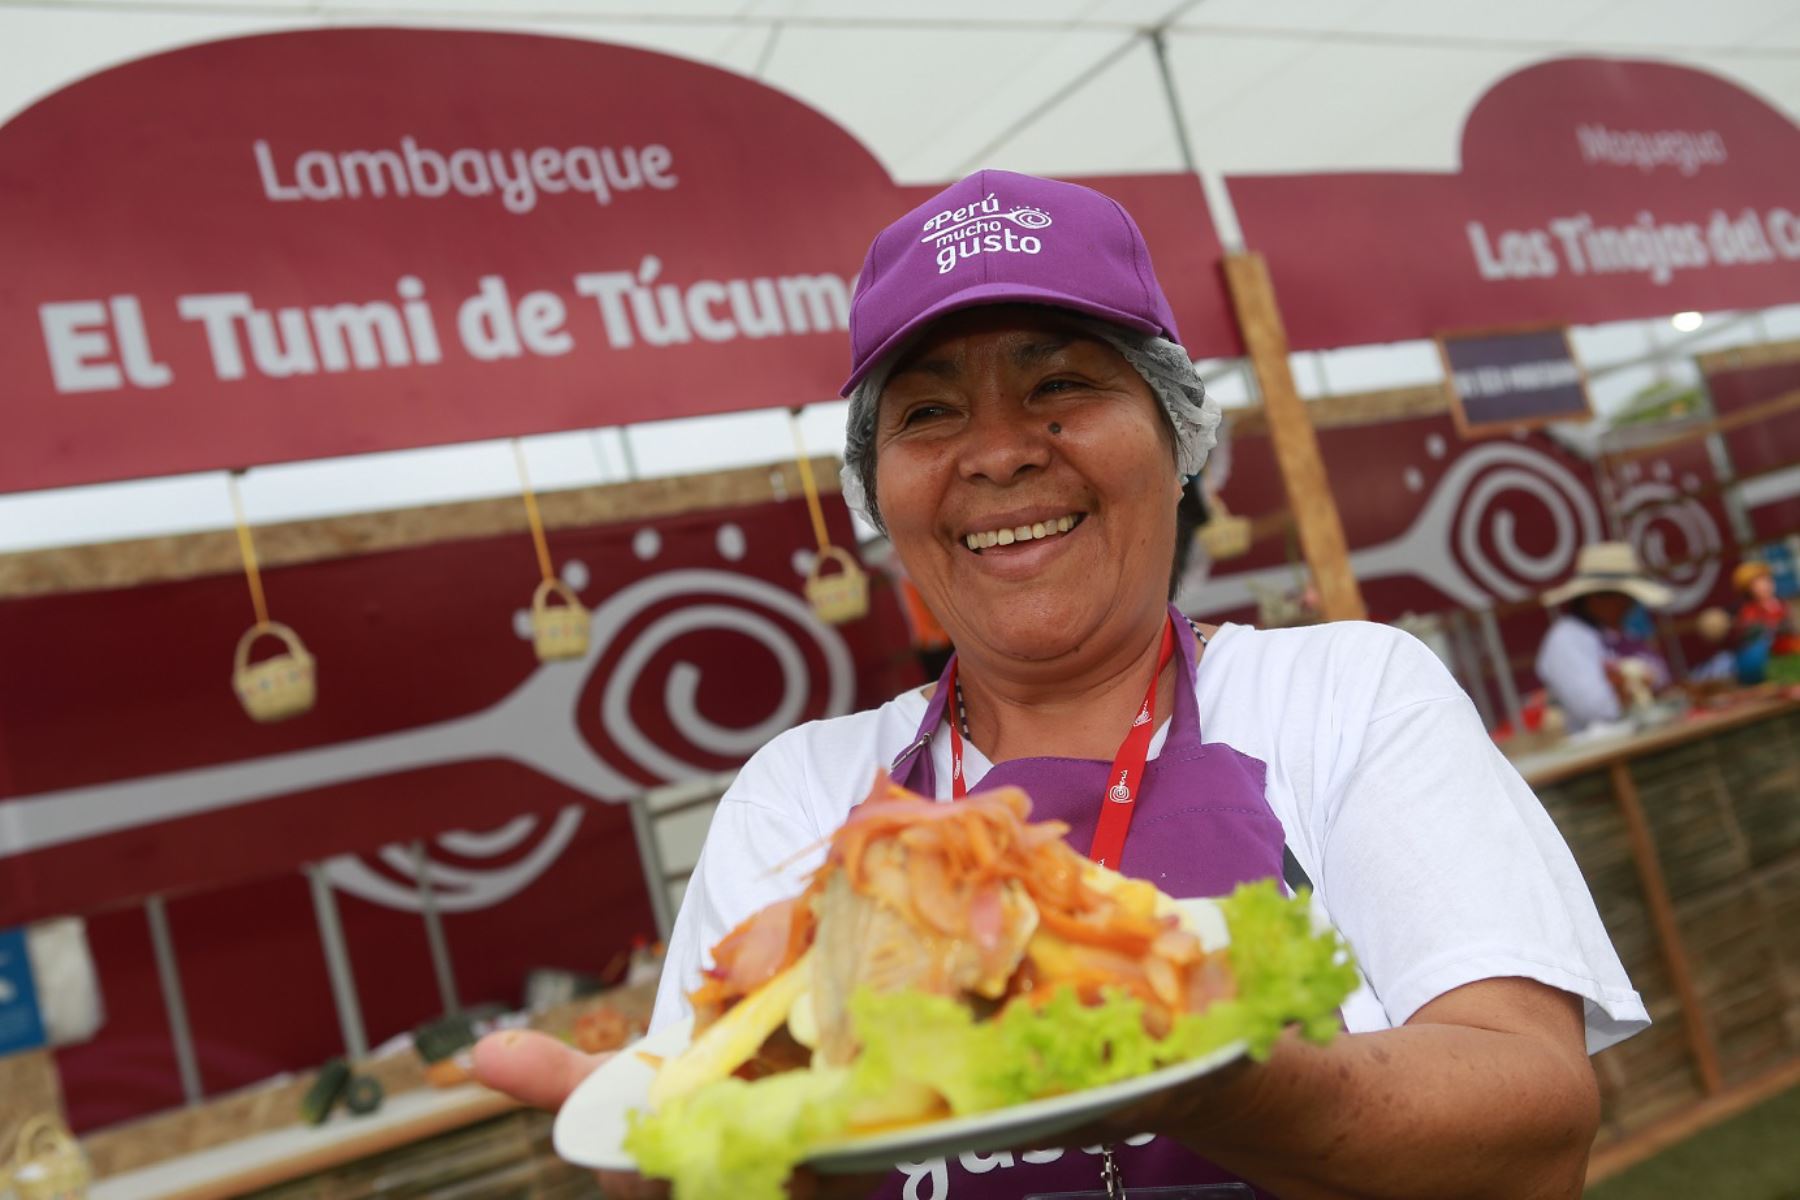 Lo mejor de la gastronomía peruana se lucirá del 1 al 3 de noviembre en la feria Perú, Mucho Gusto en el estadio Mariscal Cáceres Tumbes.